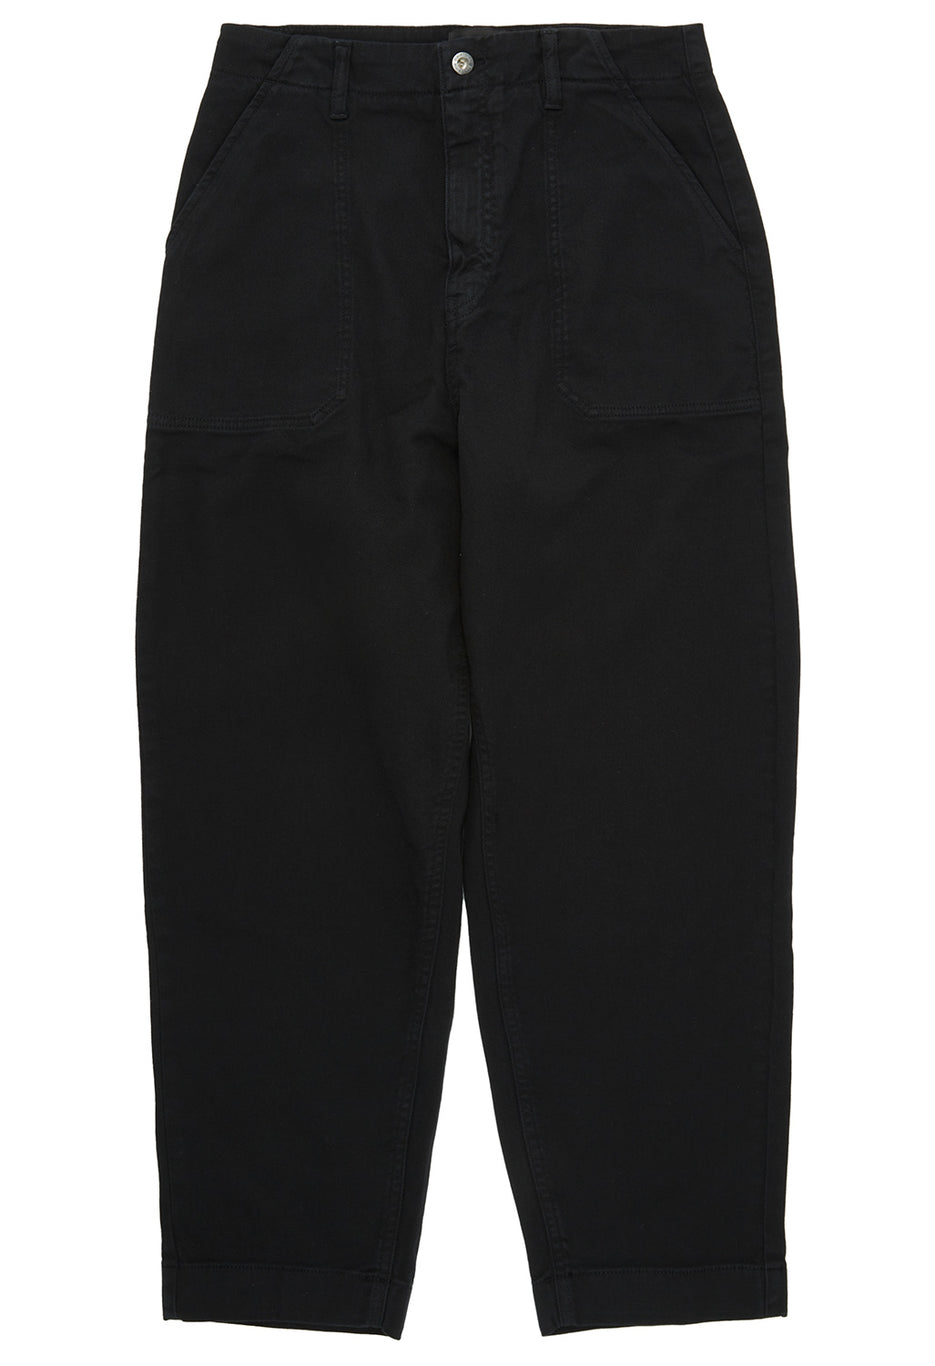 Finisterre Women's Yarrel Trousers - Black